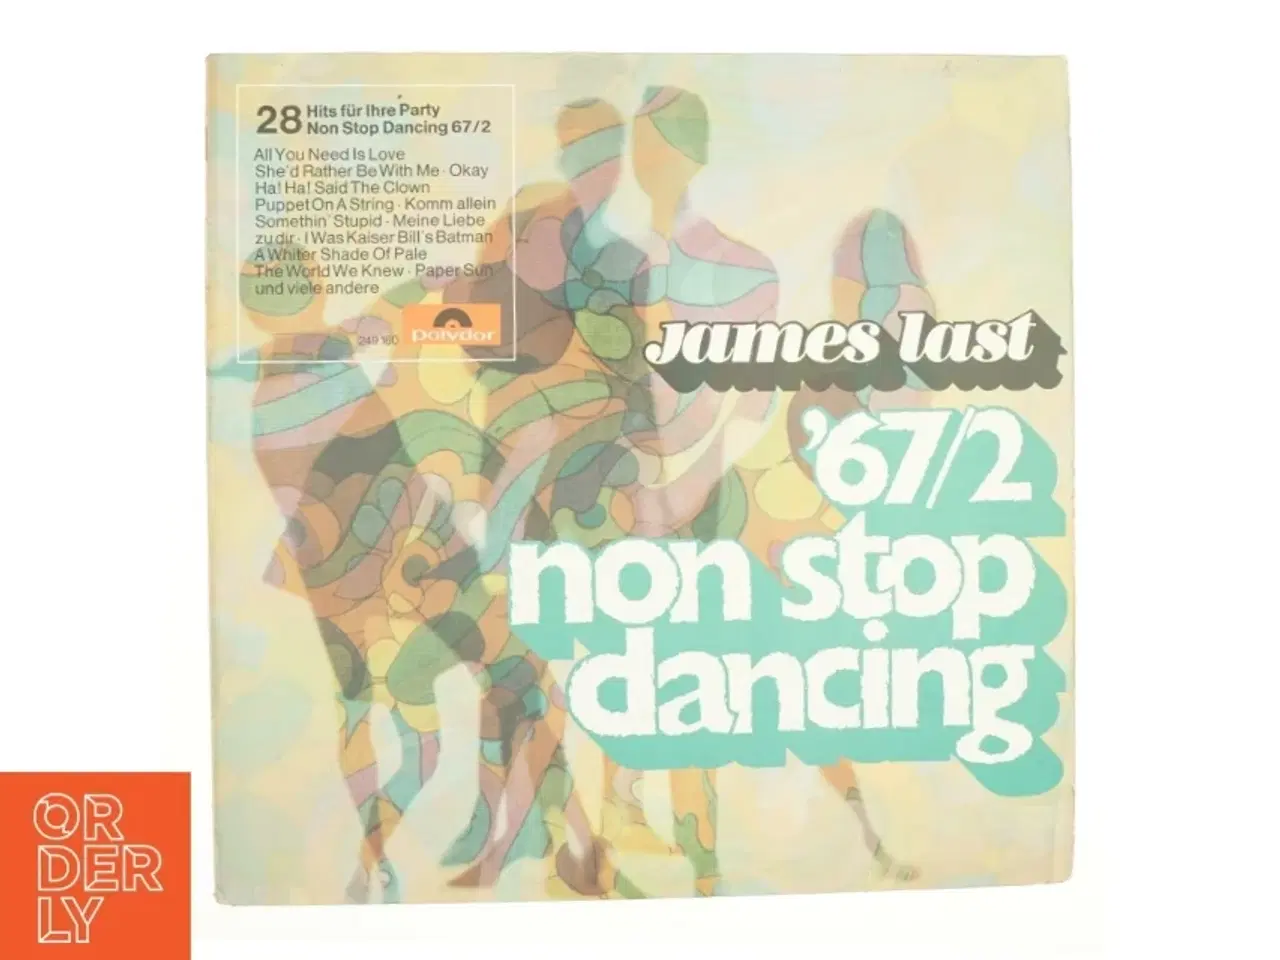 Billede 2 - James Last 67/2 non stop dancing